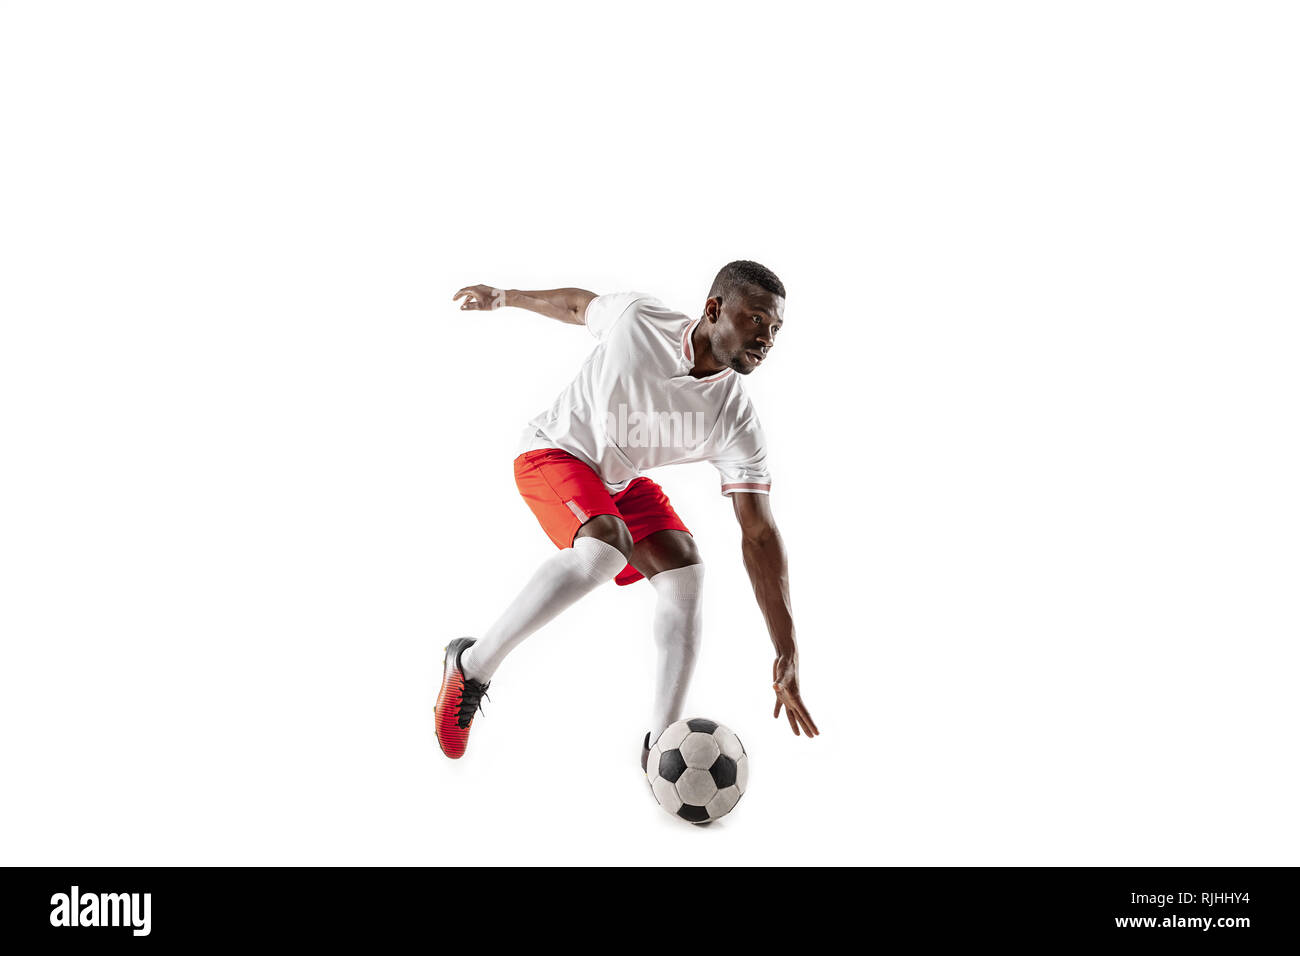 American football africain professionnel de joueur de football en motion isolated on white background studio. Mettre en place à l'homme en action, saut, mouvement à jeu. Banque D'Images